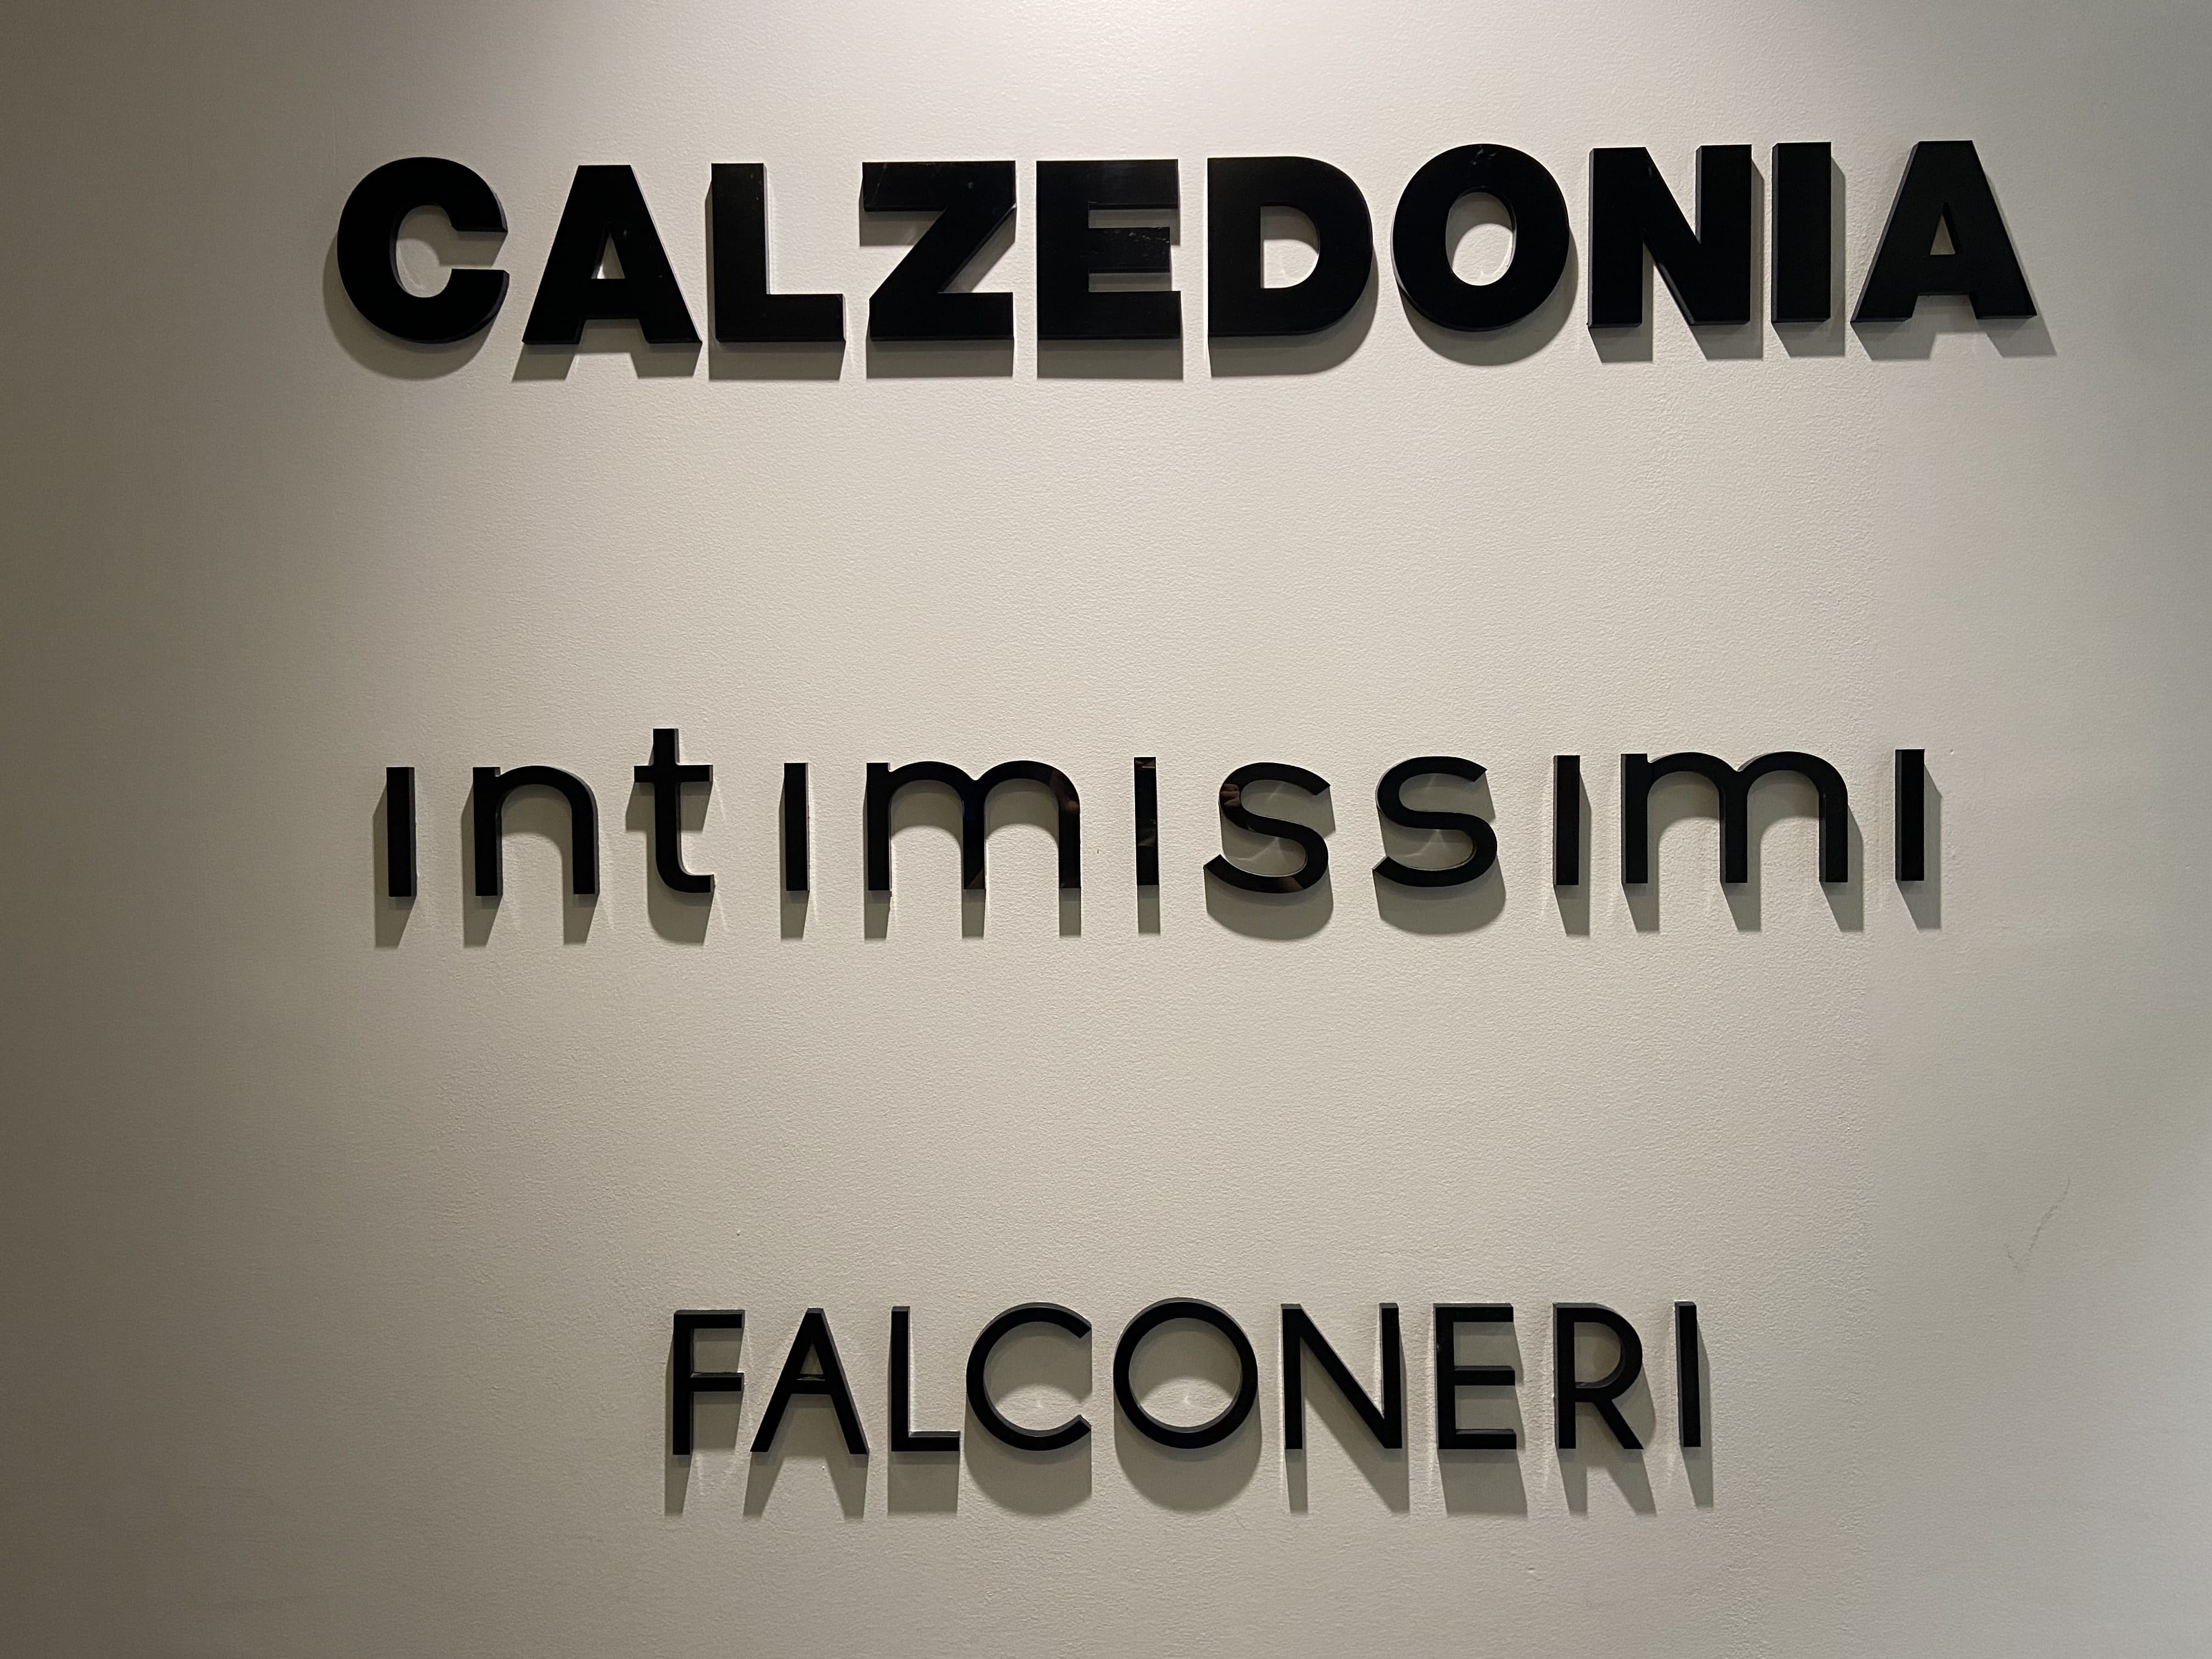 Calzedonia Groupより３つのブランドが日本に上陸しています。